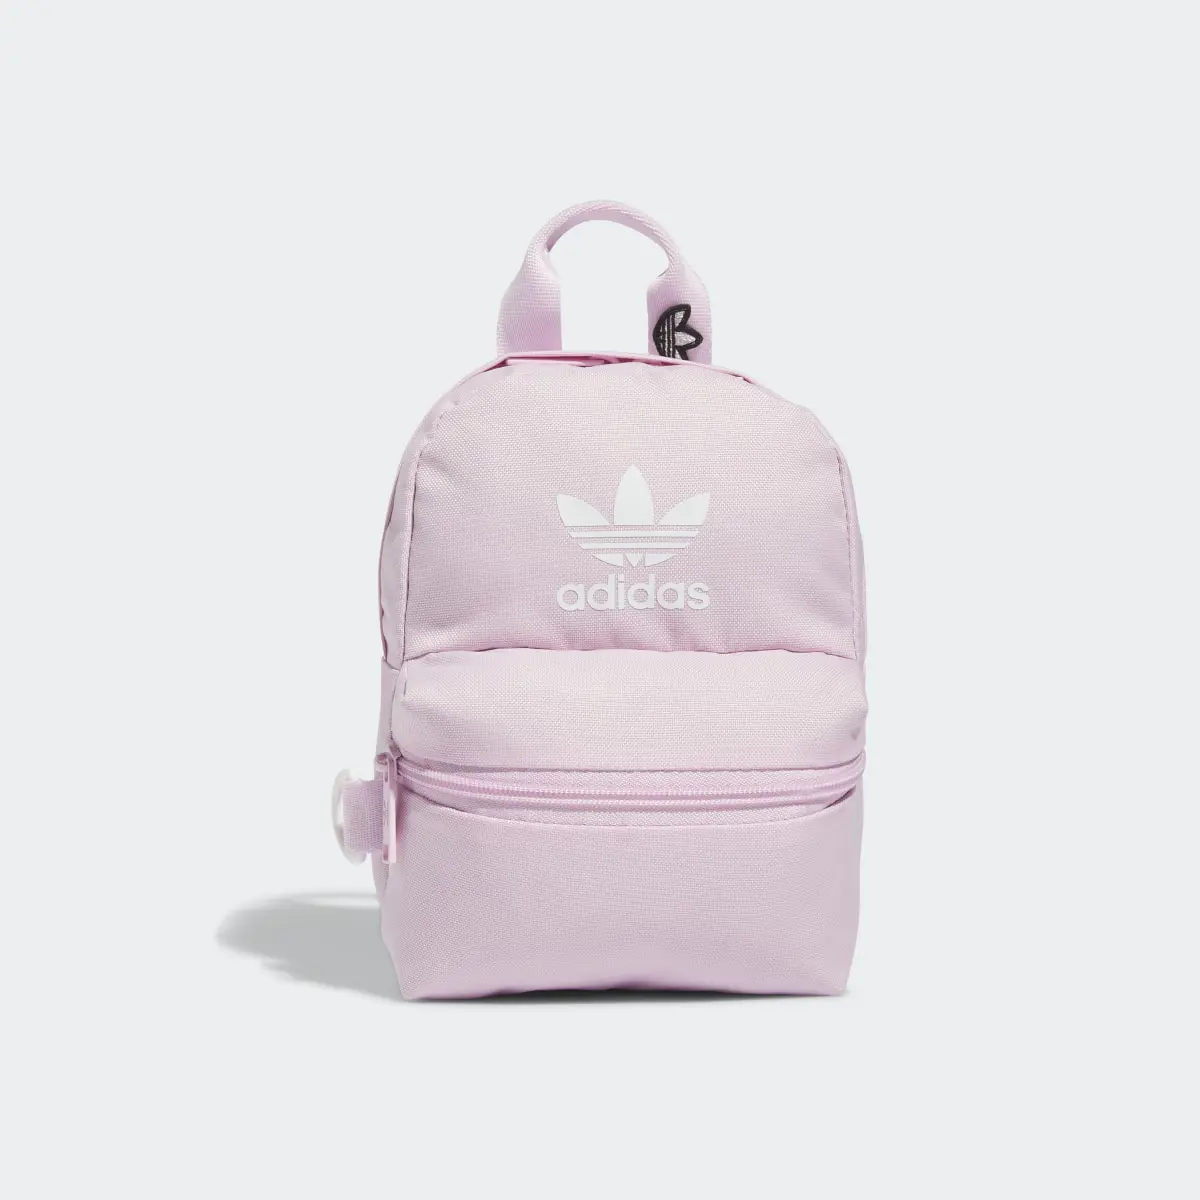 Adidas Trefoil 2.0 Mini Backpack. 2